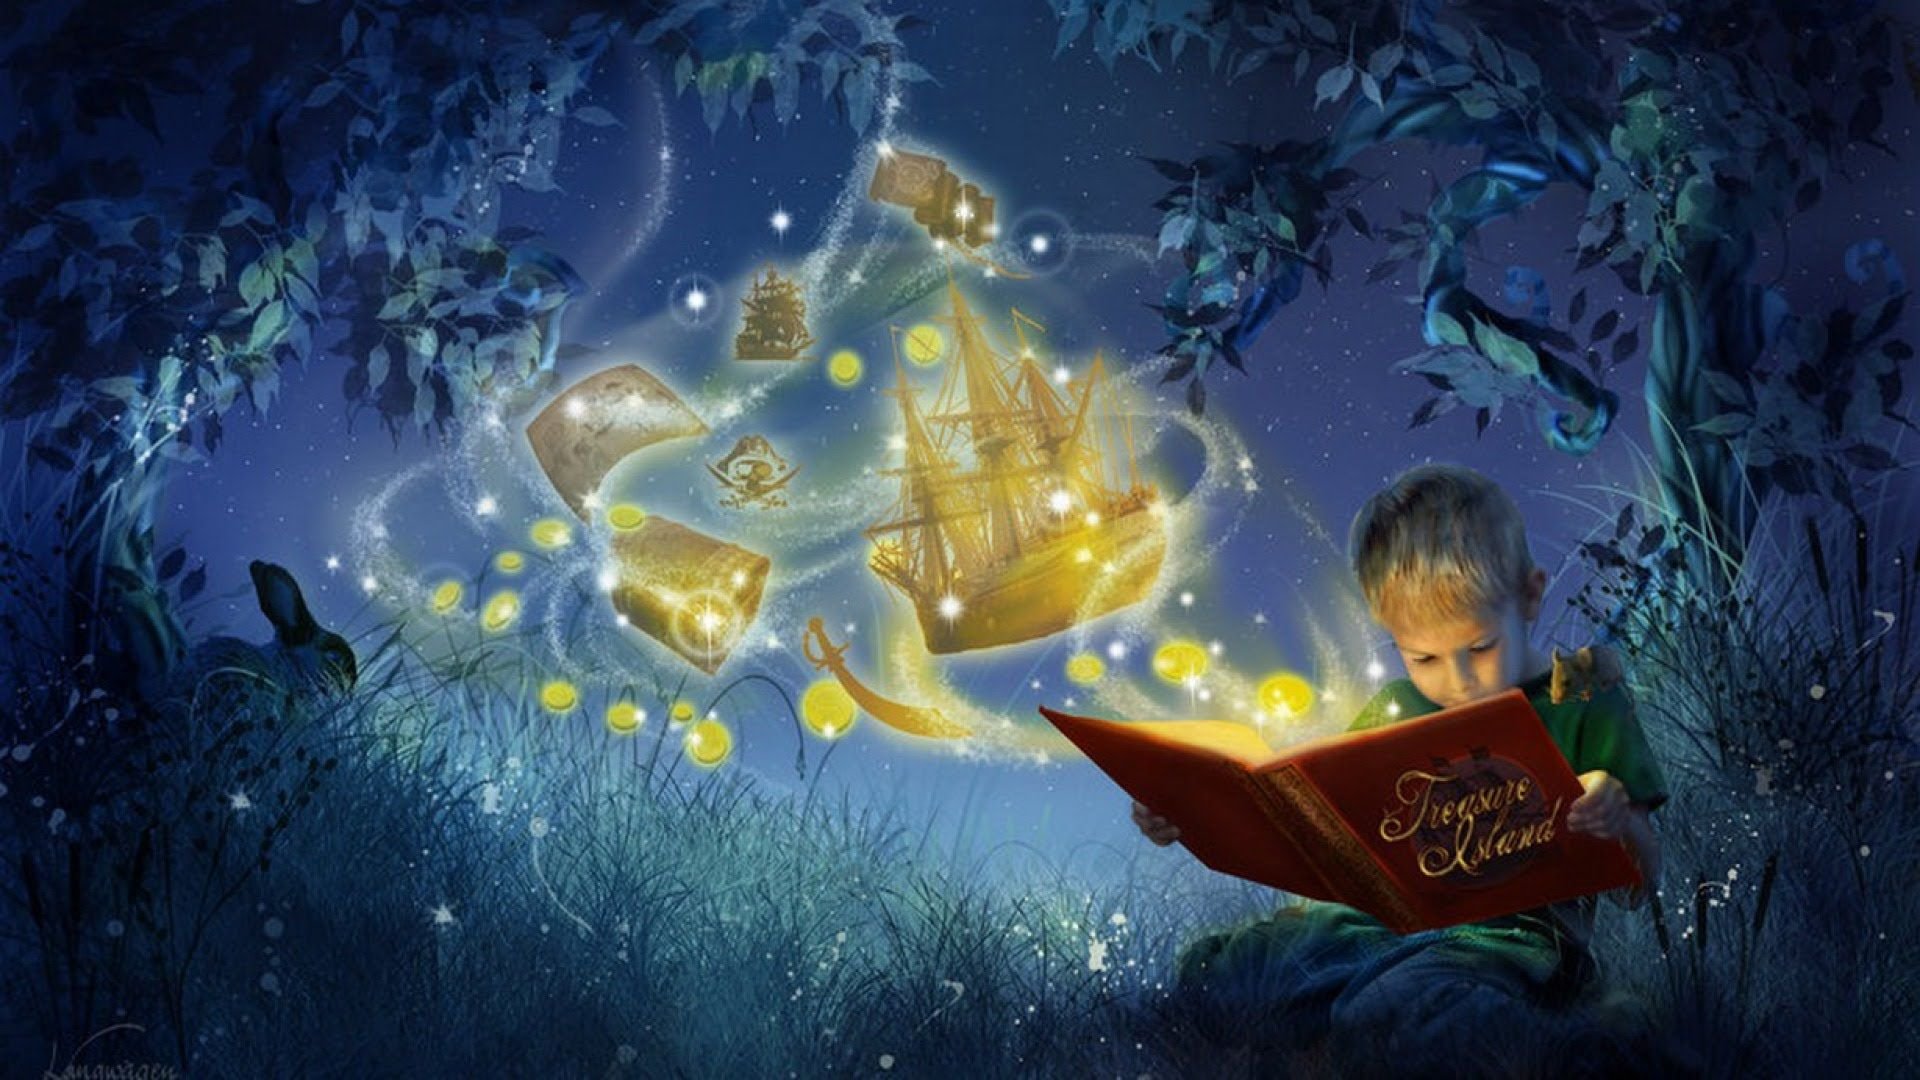 Читать чудесные сказки. Волшебный мир сказок. Ночные сказки. Волшебство для детей. Волшебство чтения.